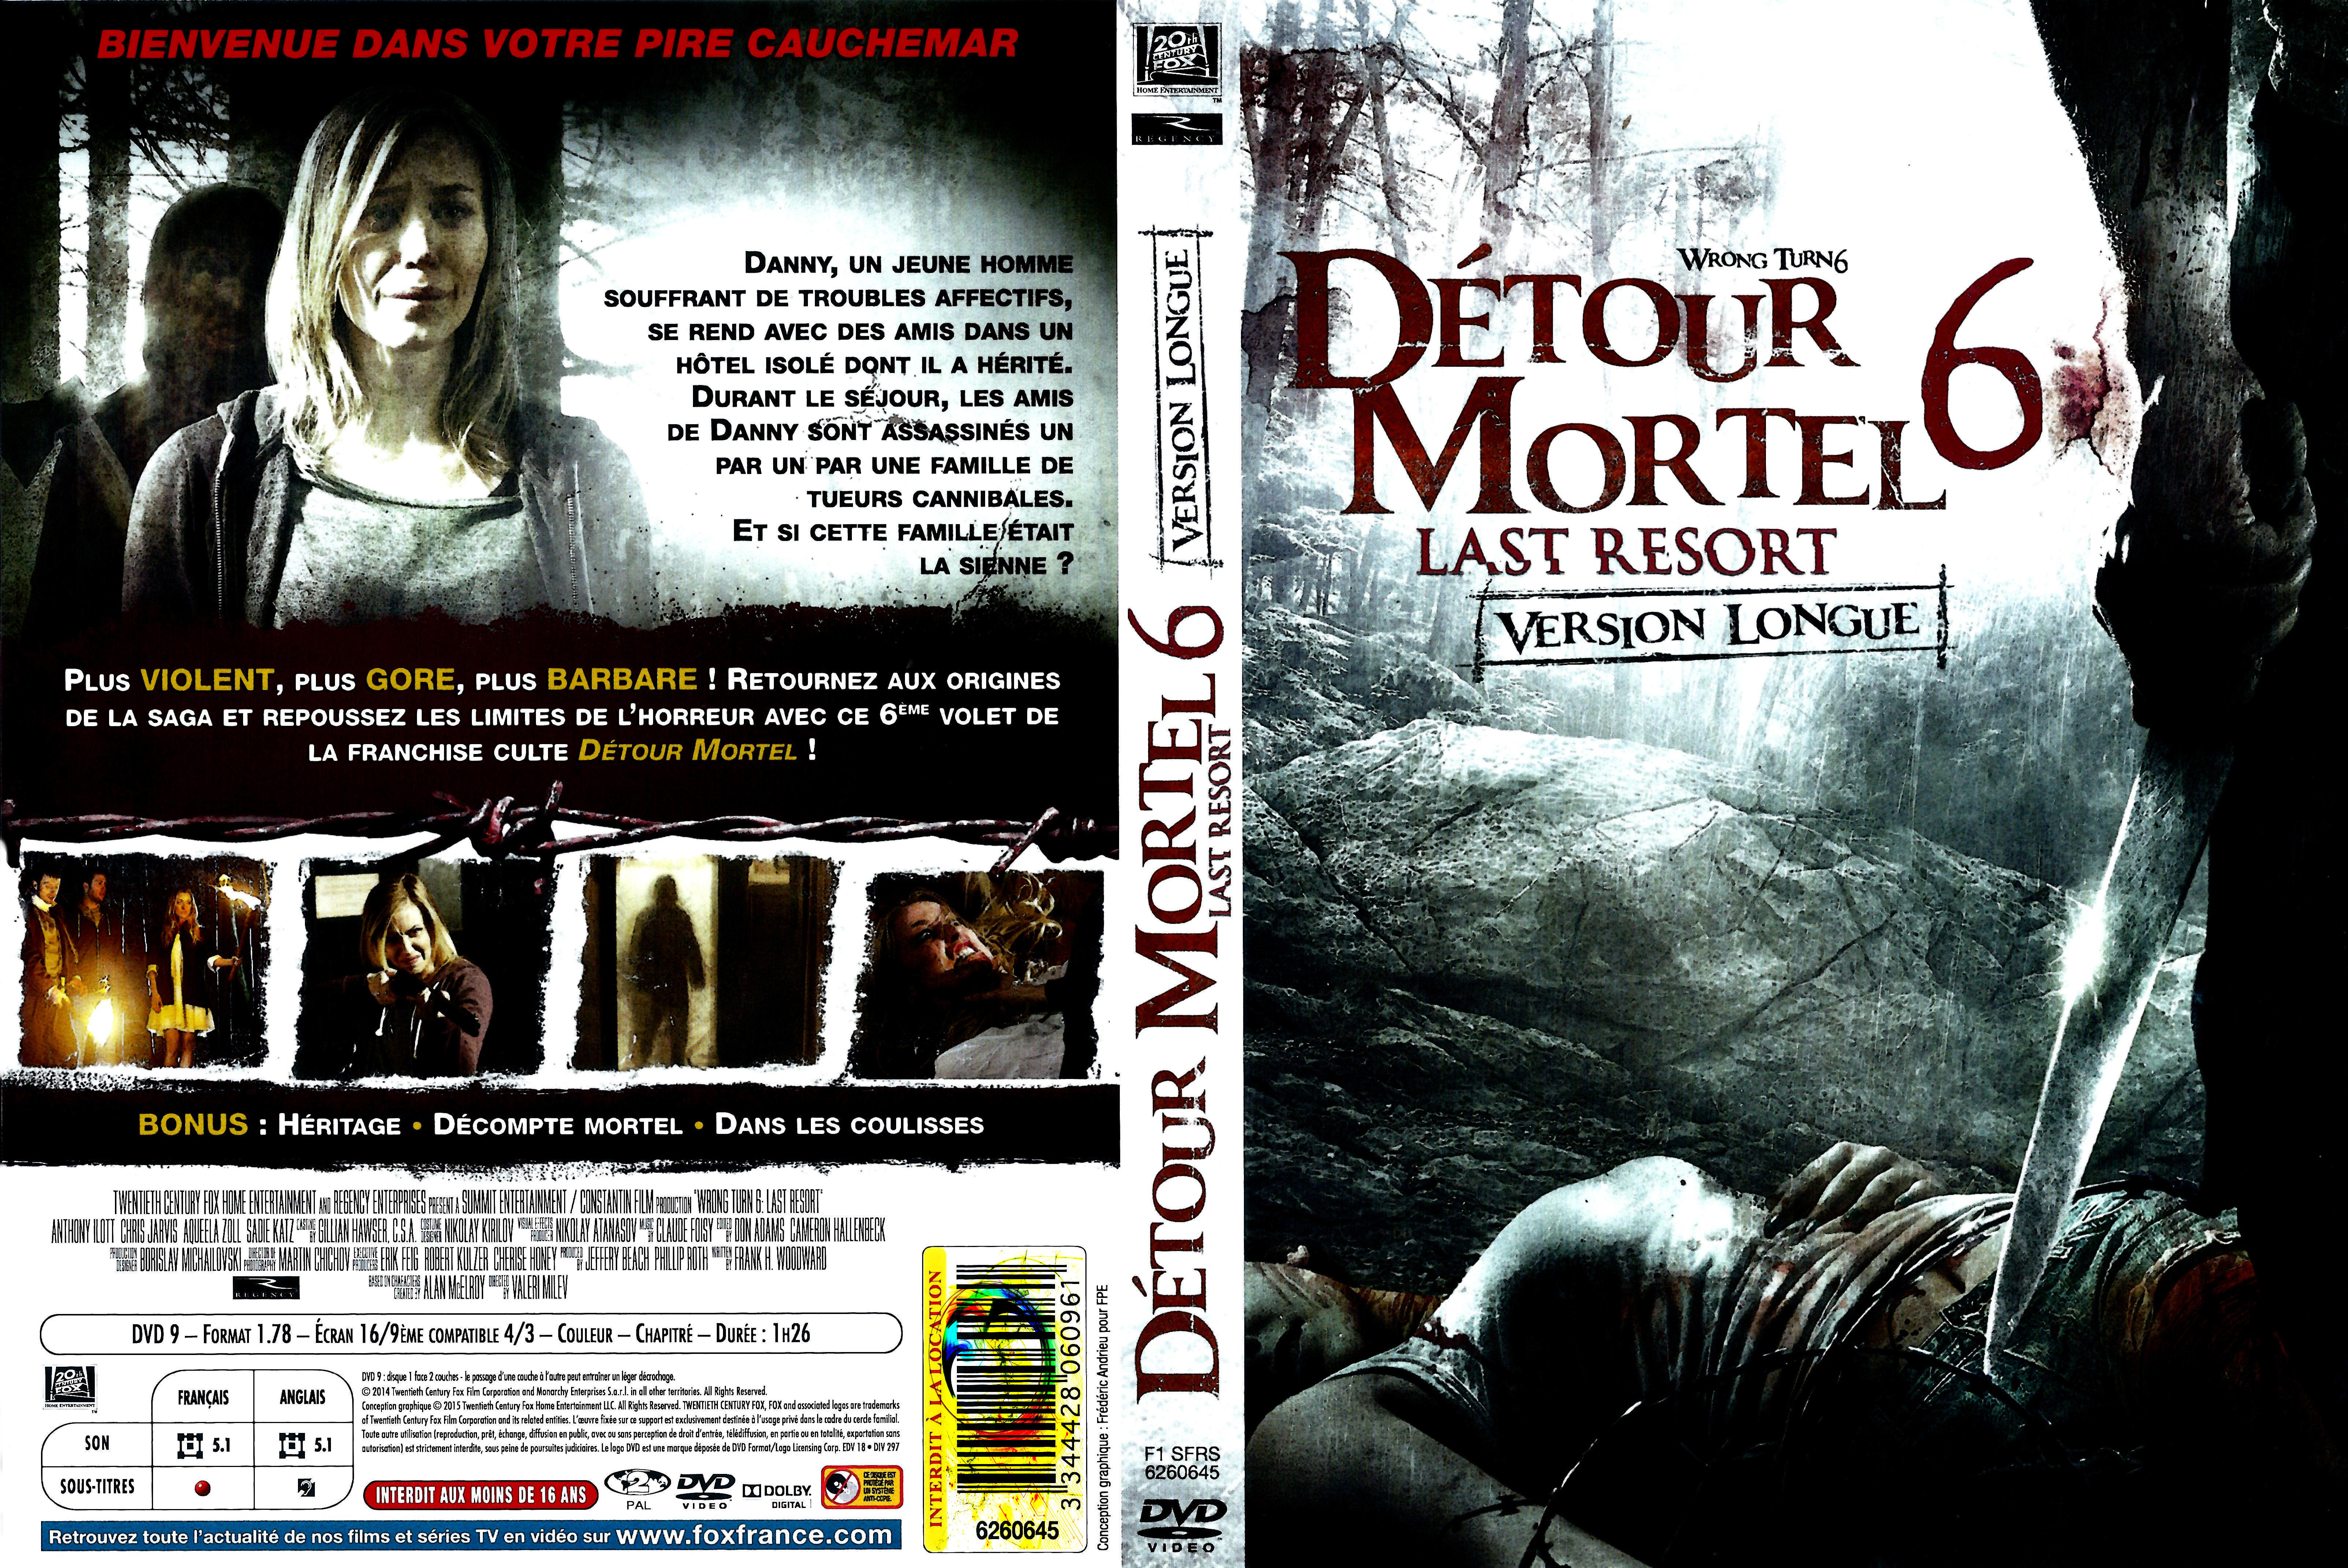 Jaquette DVD Detour mortel 6